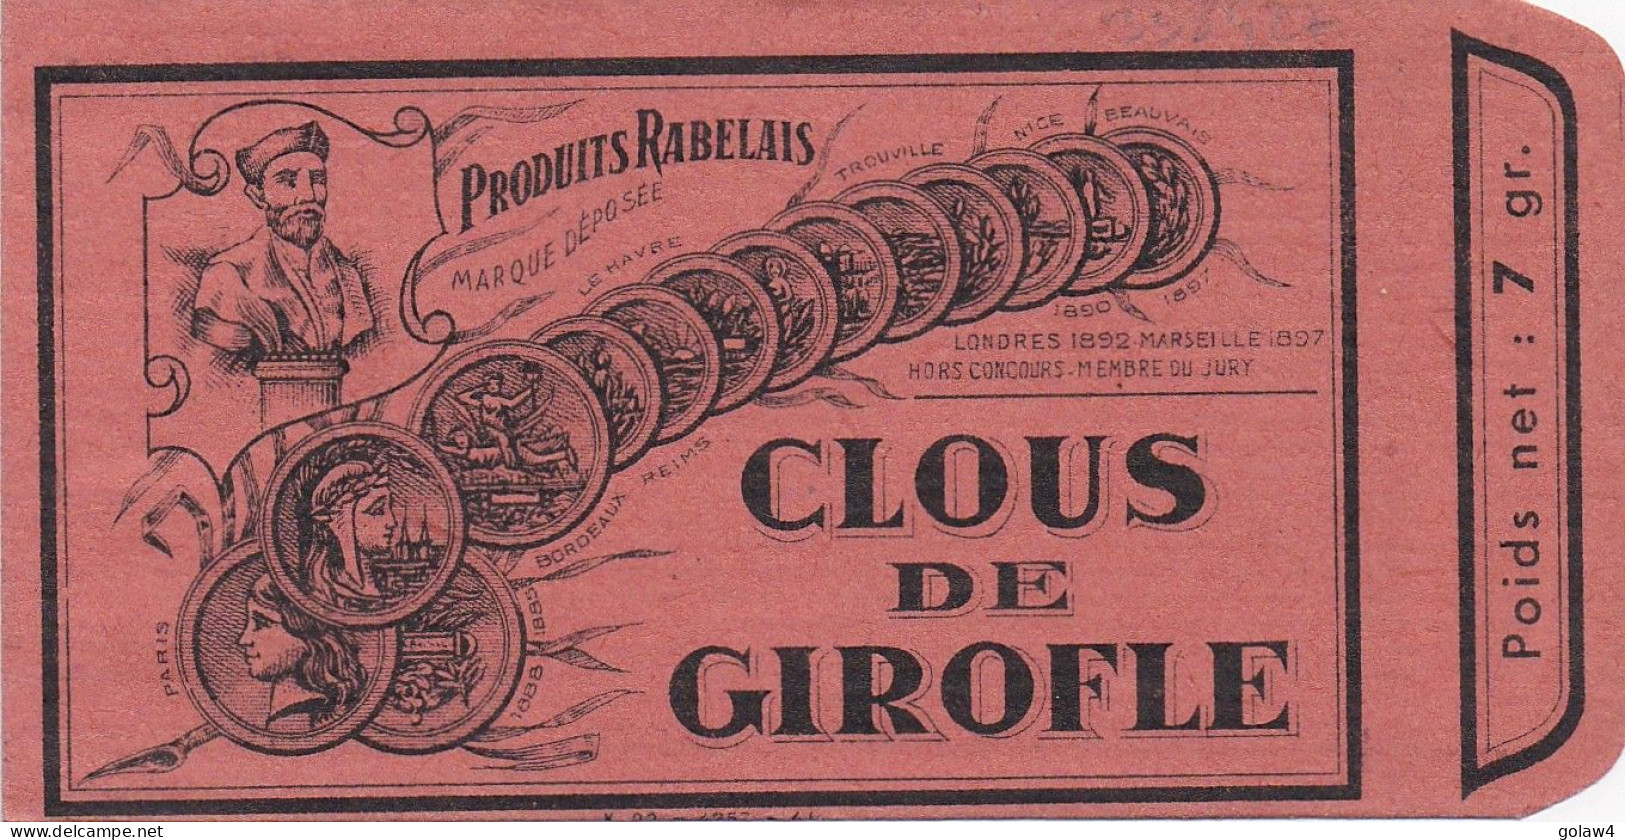 33842# SACHET CLOUS DE GIROFLE PRODUITS RABELAIS POIDS NET 7 Gr EPICE - Matériel Et Accessoires